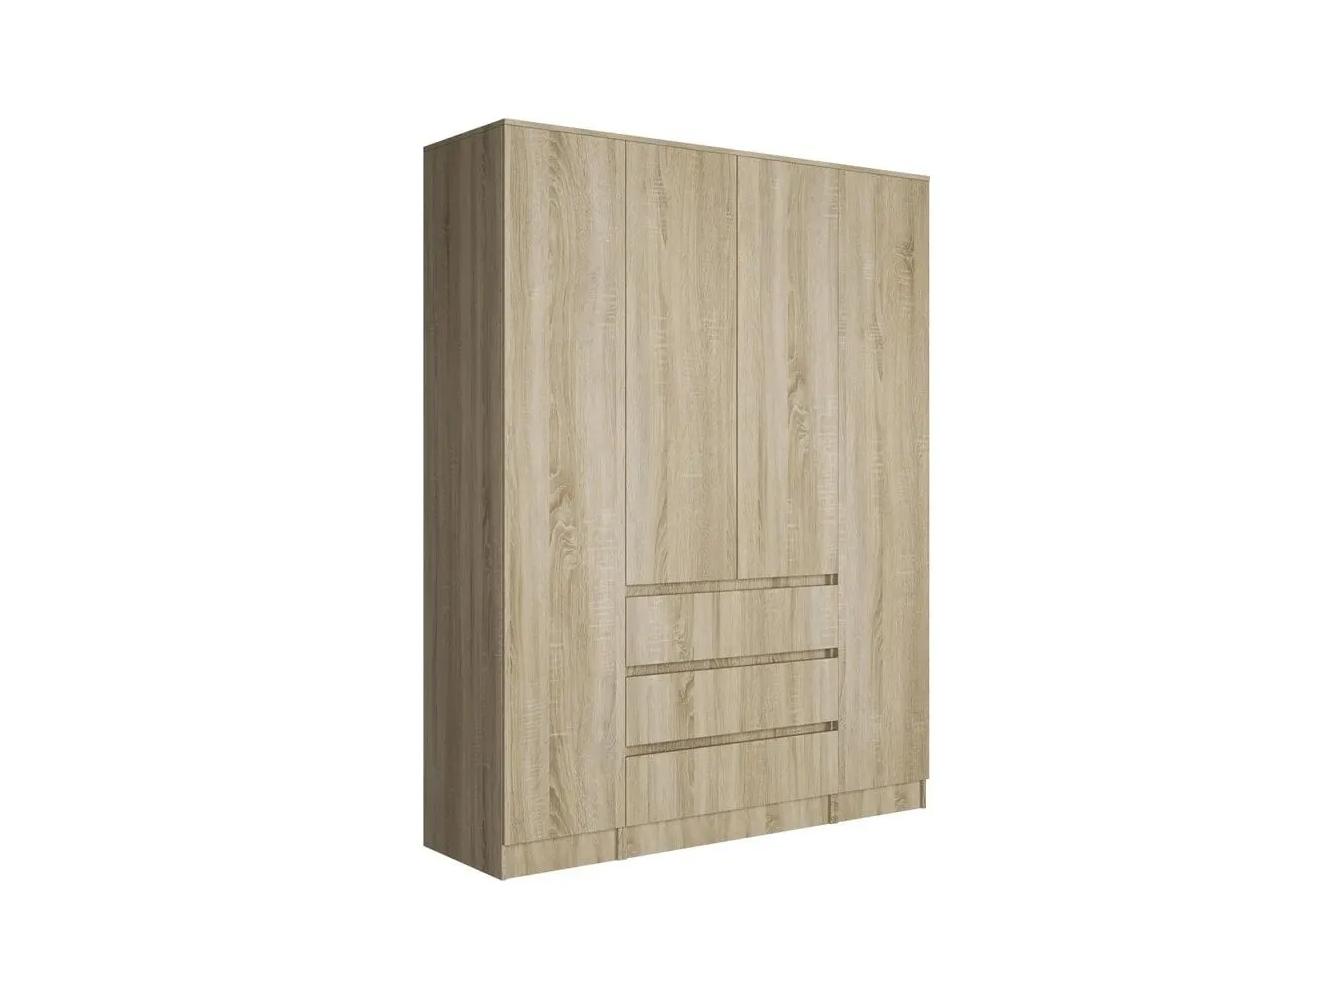 Распашной шкаф Мальм 315 oak ИКЕА (IKEA) изображение товара